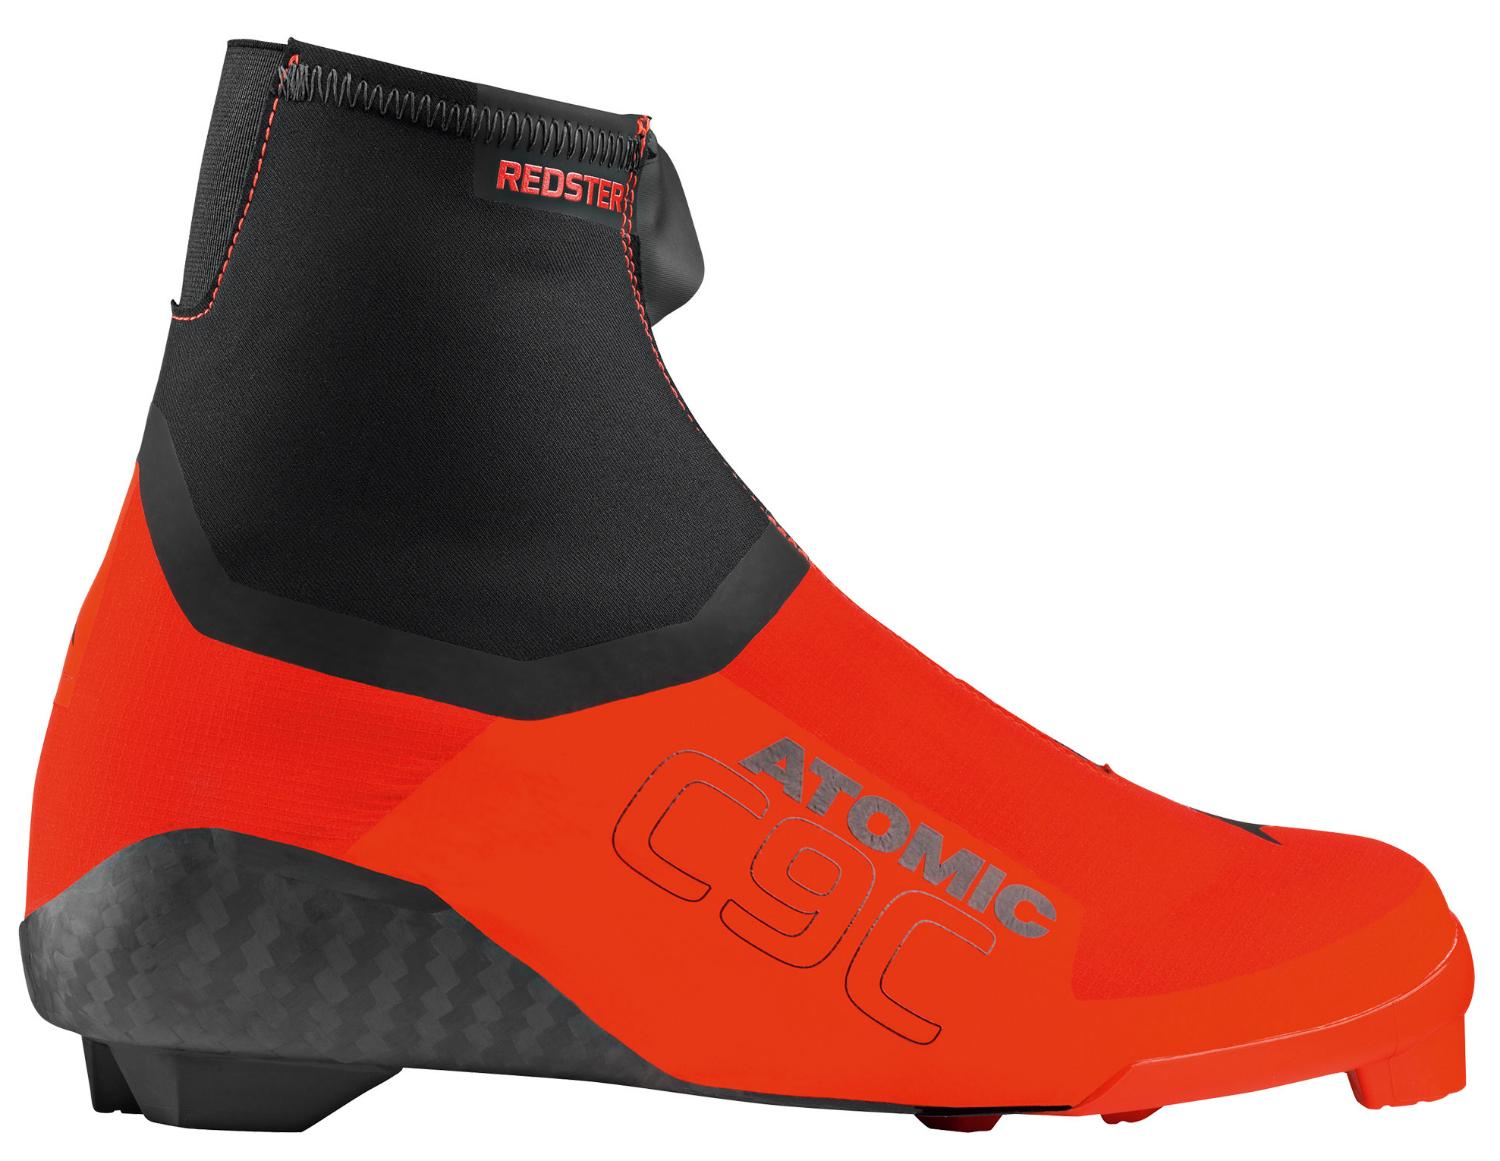 Лыжные ботинки ATOMIC 2020-21 Redster c9 carbon